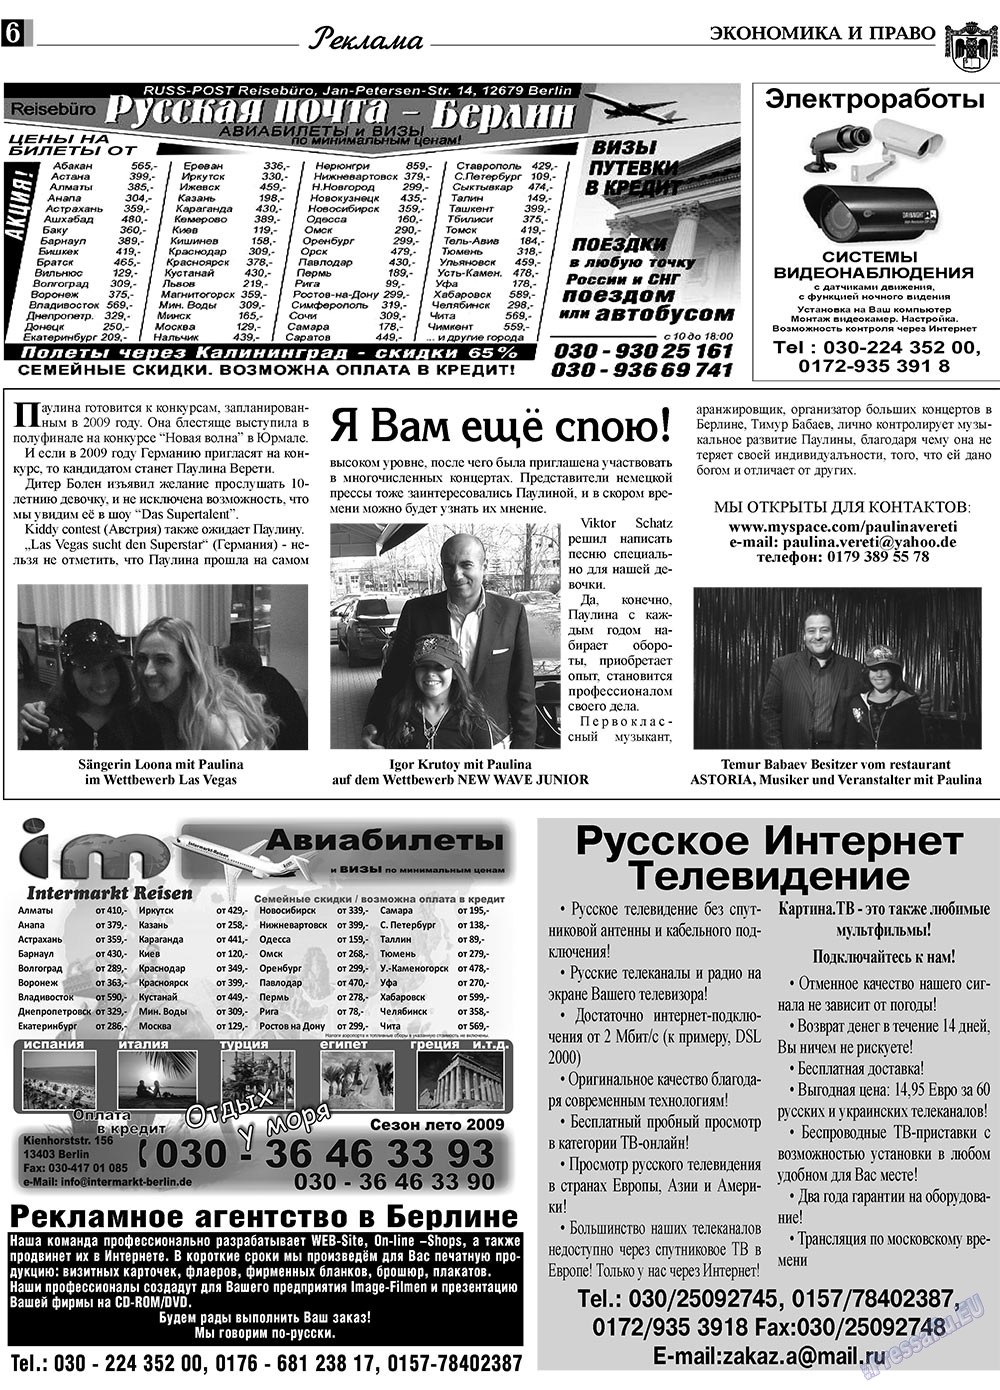 Экономика и право, газета. 2009 №5 стр.6